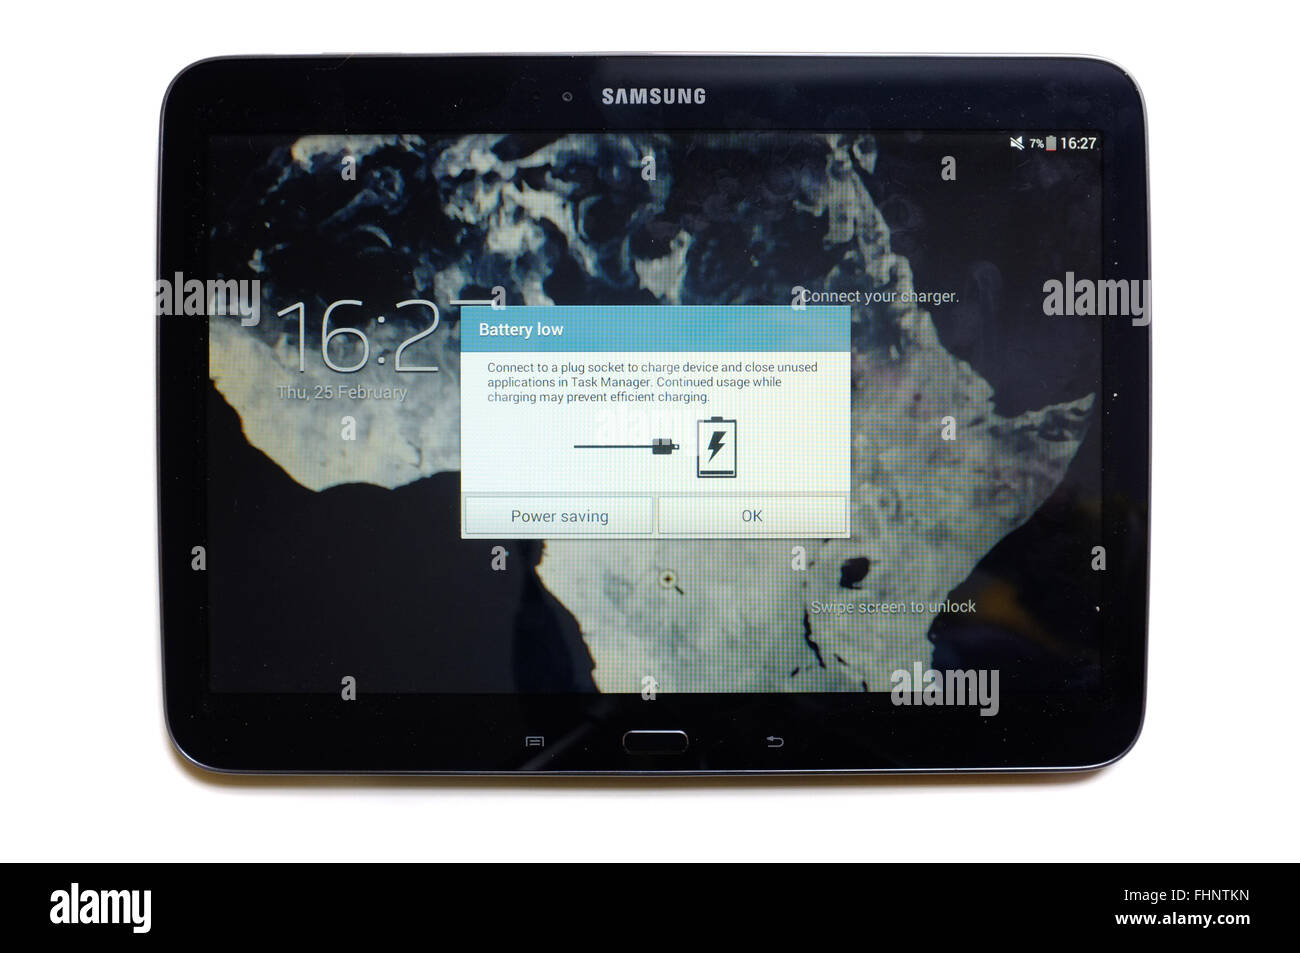 Low tablet battery immagini e fotografie stock ad alta risoluzione - Alamy